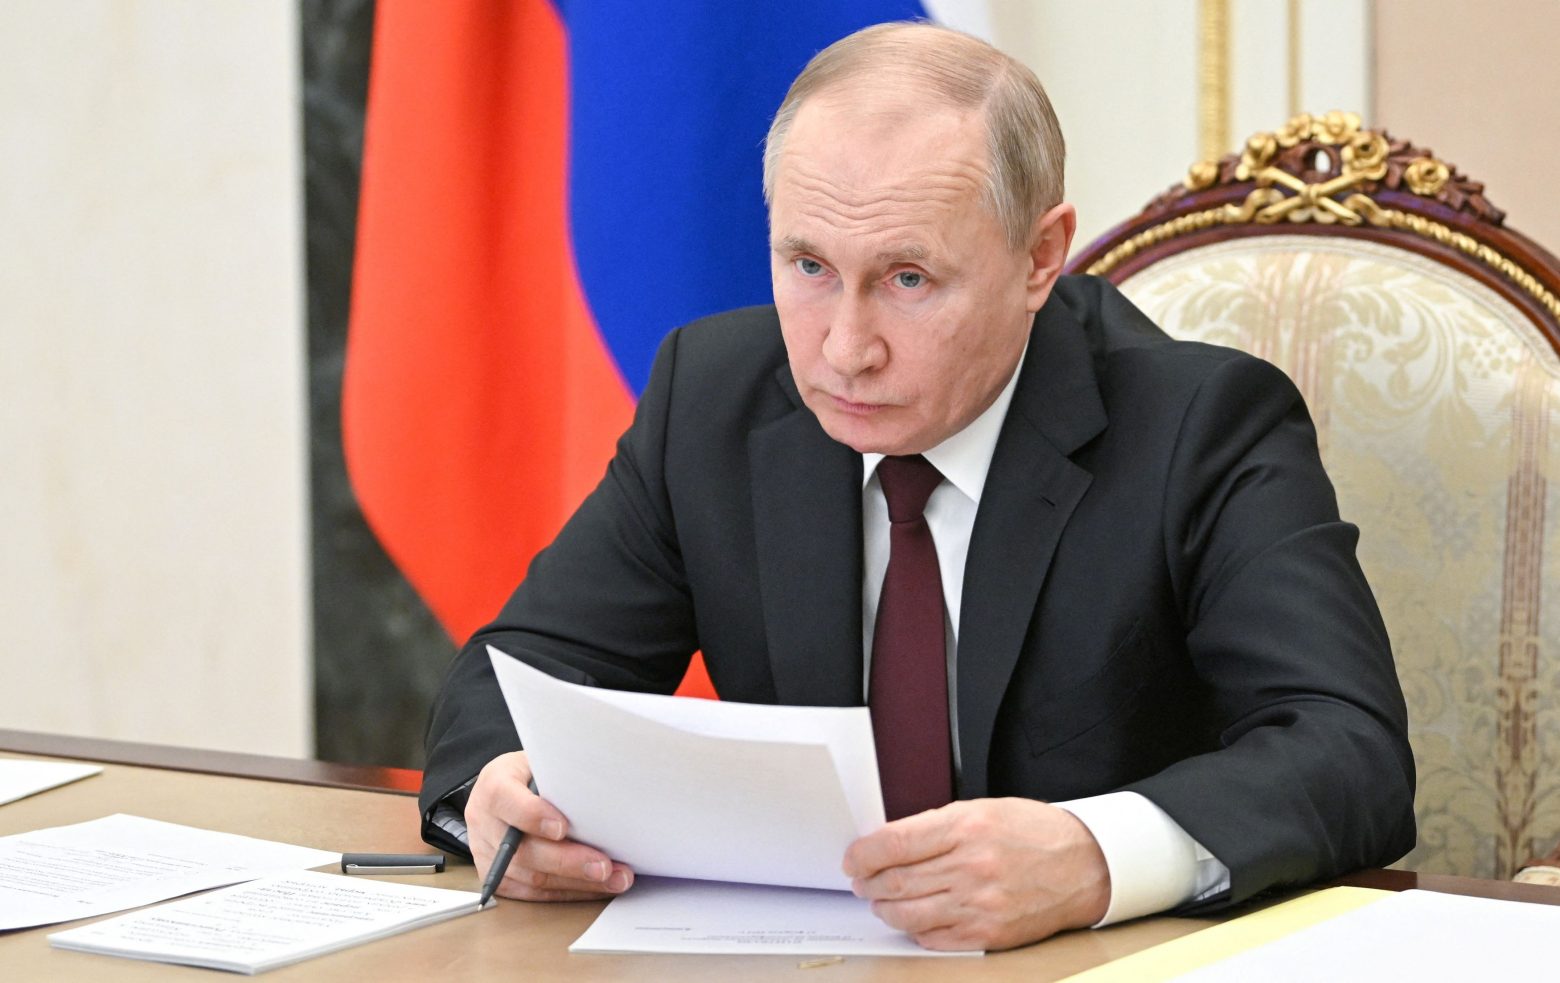 Βλαντιμίρ Πούτιν: Σκληρός διαπραγματευτής ή… παρανοϊκός; - Οι αναλυτές διχάζονται